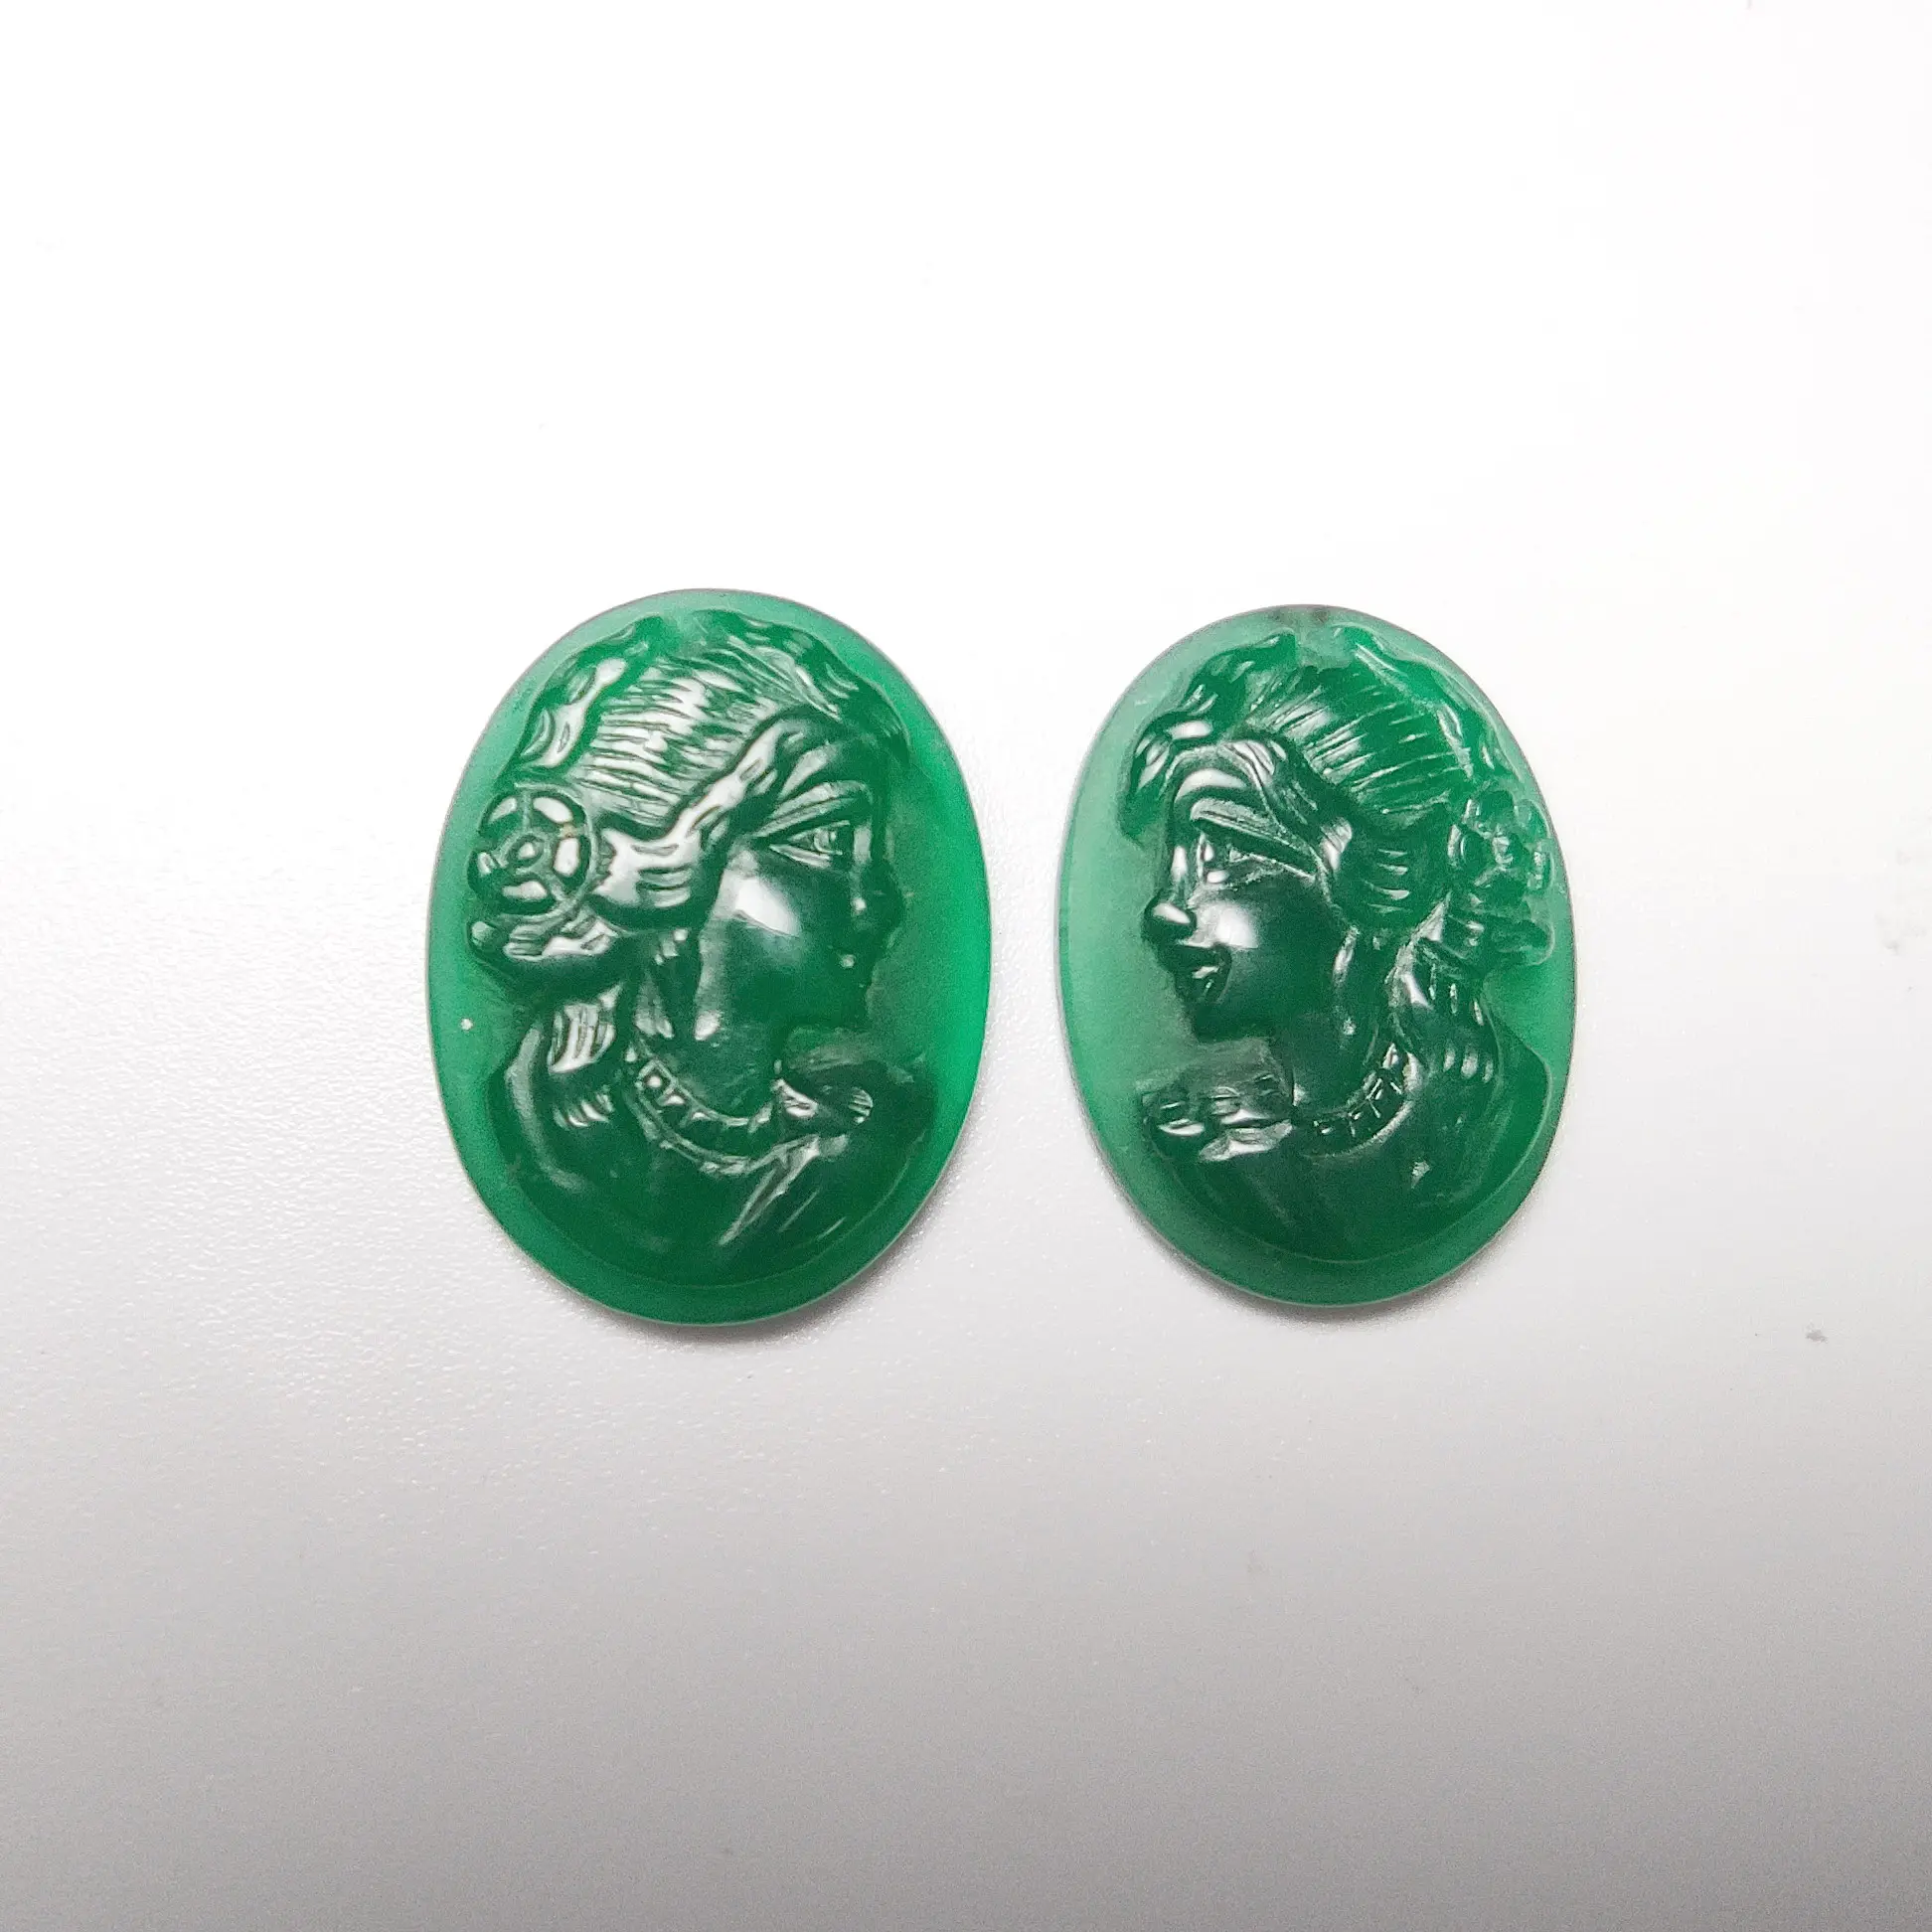 Mão esculpir lindo verde agate beleza cabeça com esculpido alianças cameo semi-precious pedras para design